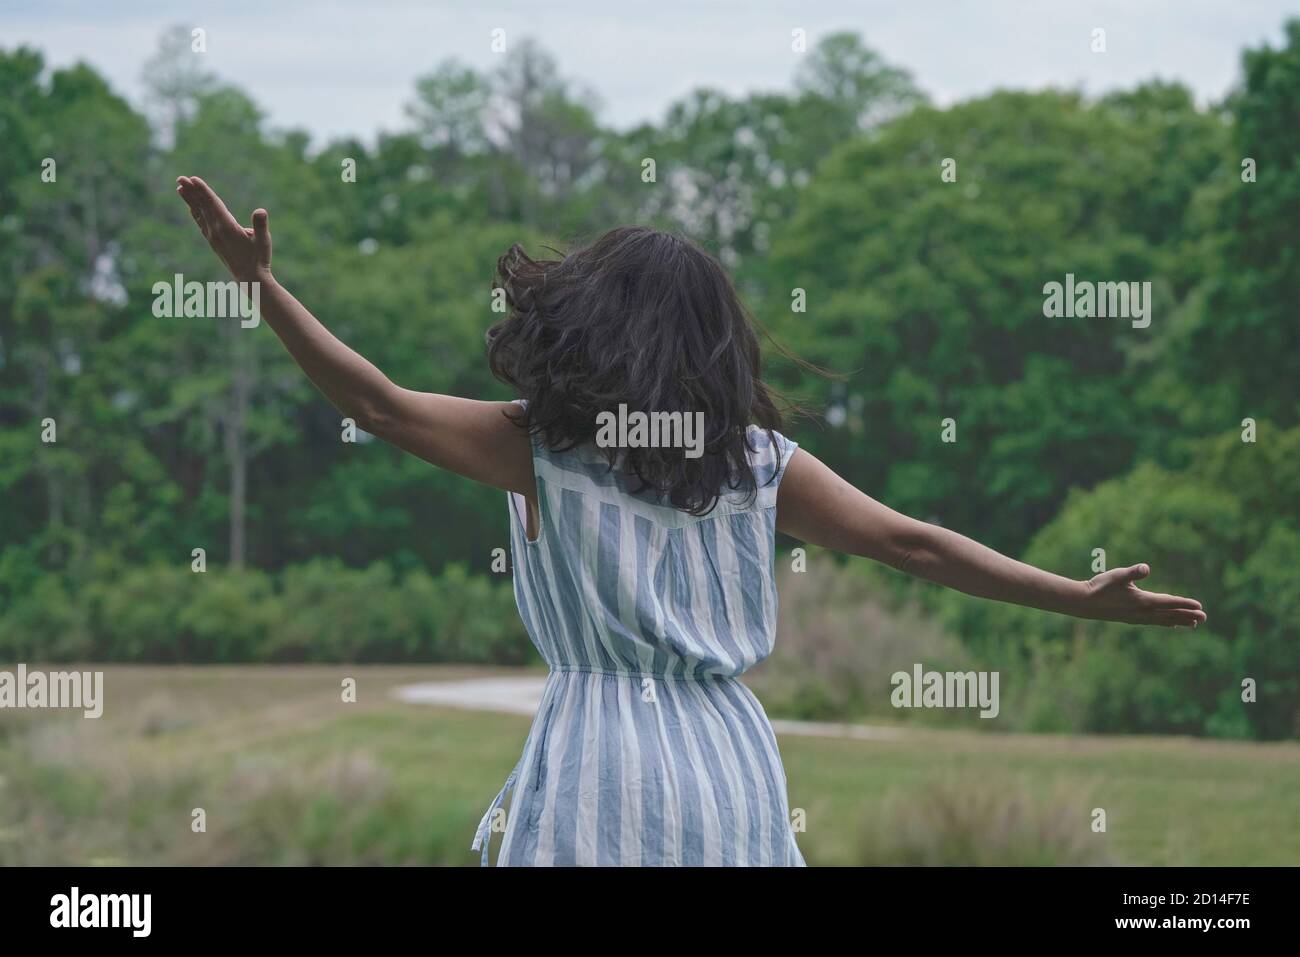 La mujer extiende sus brazos en la naturaleza, bailando con los sonidos del bosque, Foto de stock